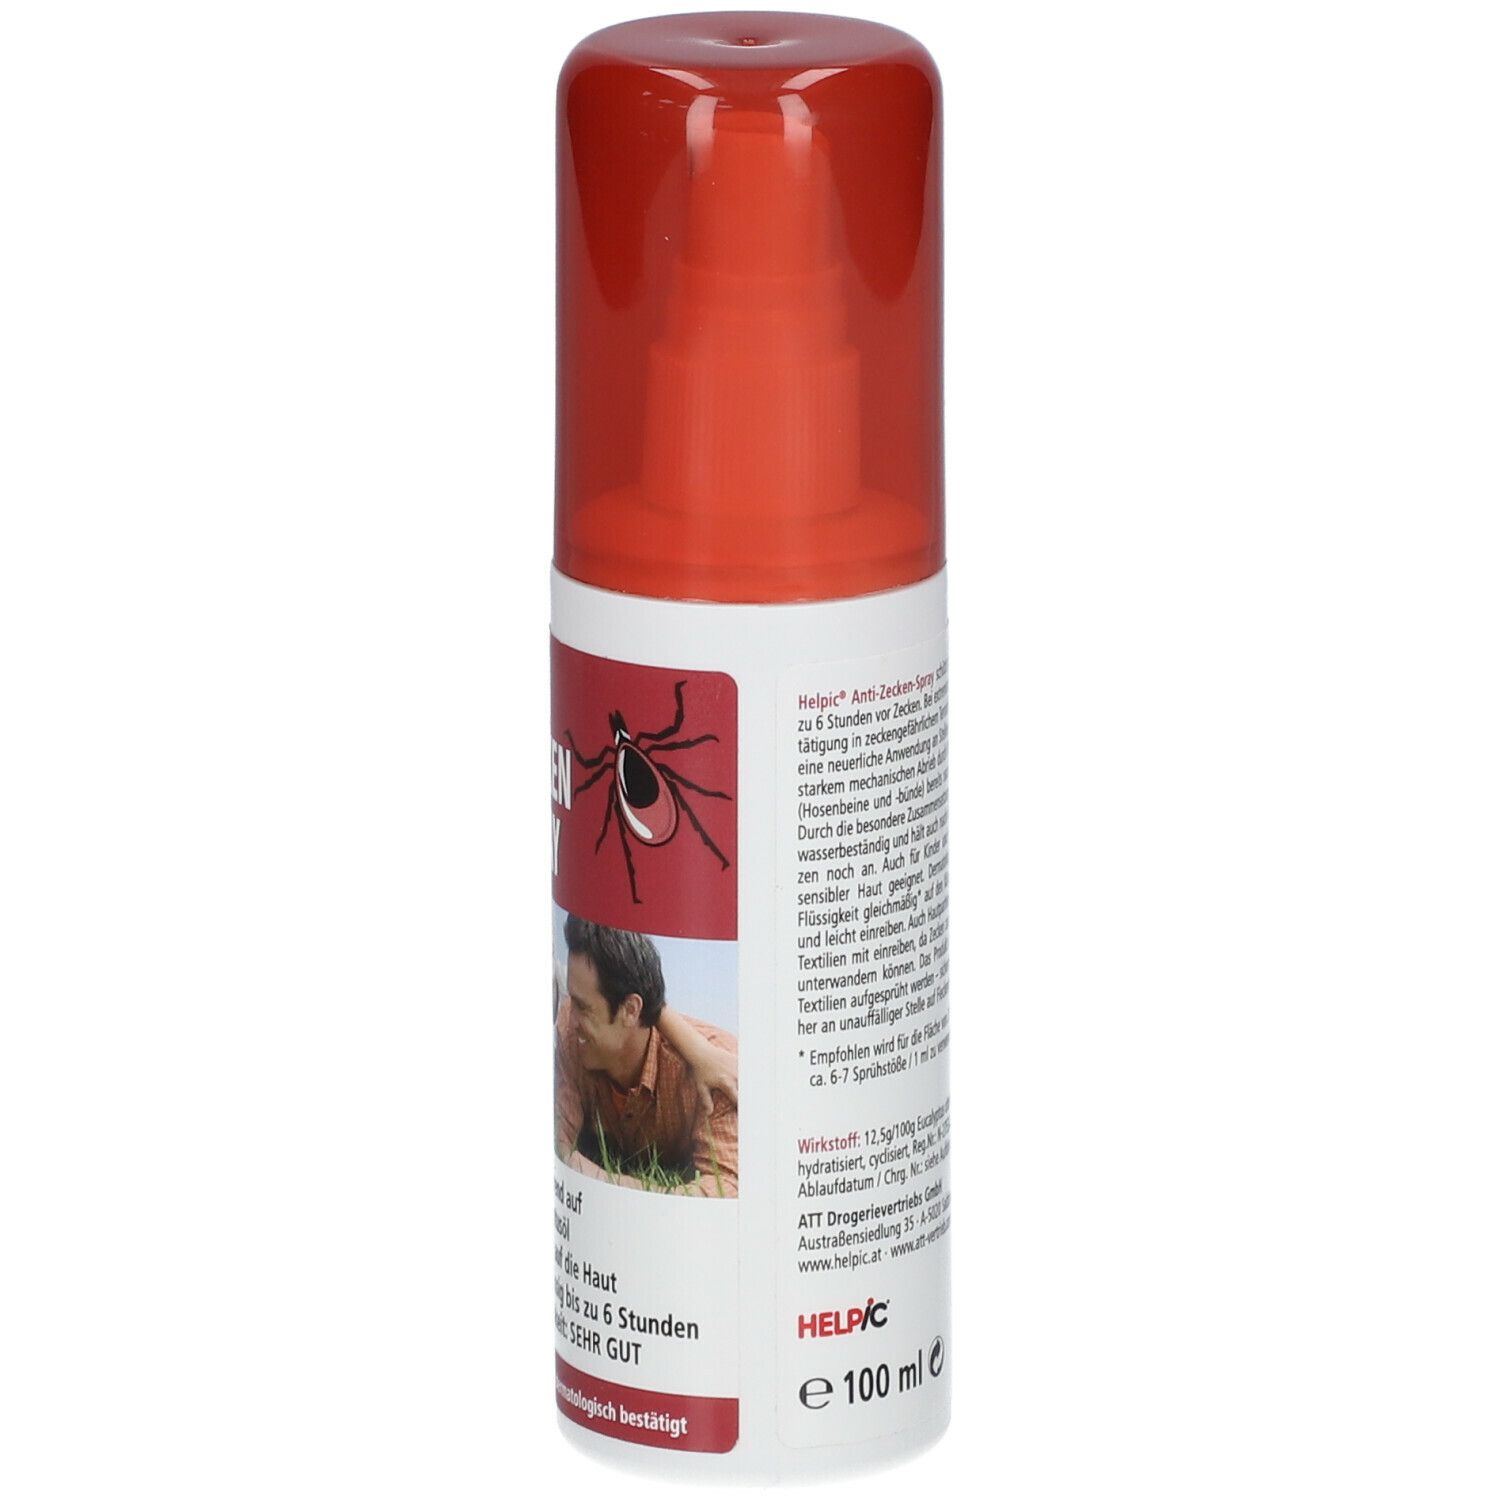 HELPIC® Anti Zecken Spray